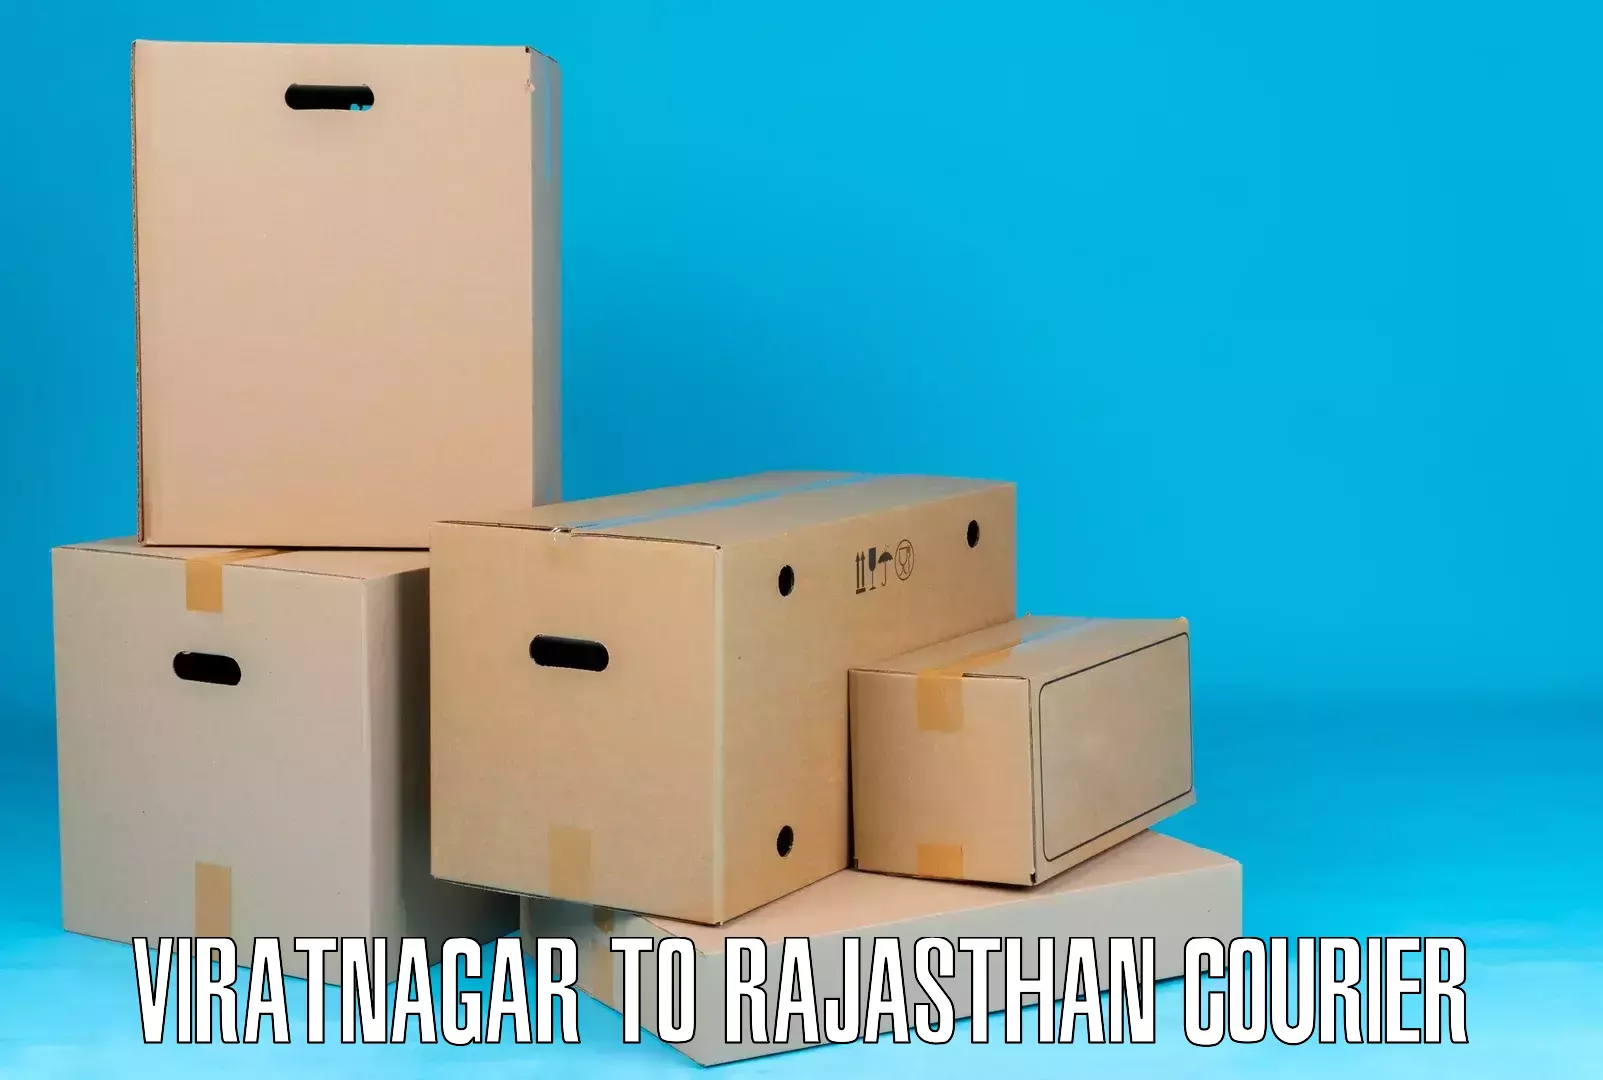 Global parcel delivery Viratnagar to Abu Road